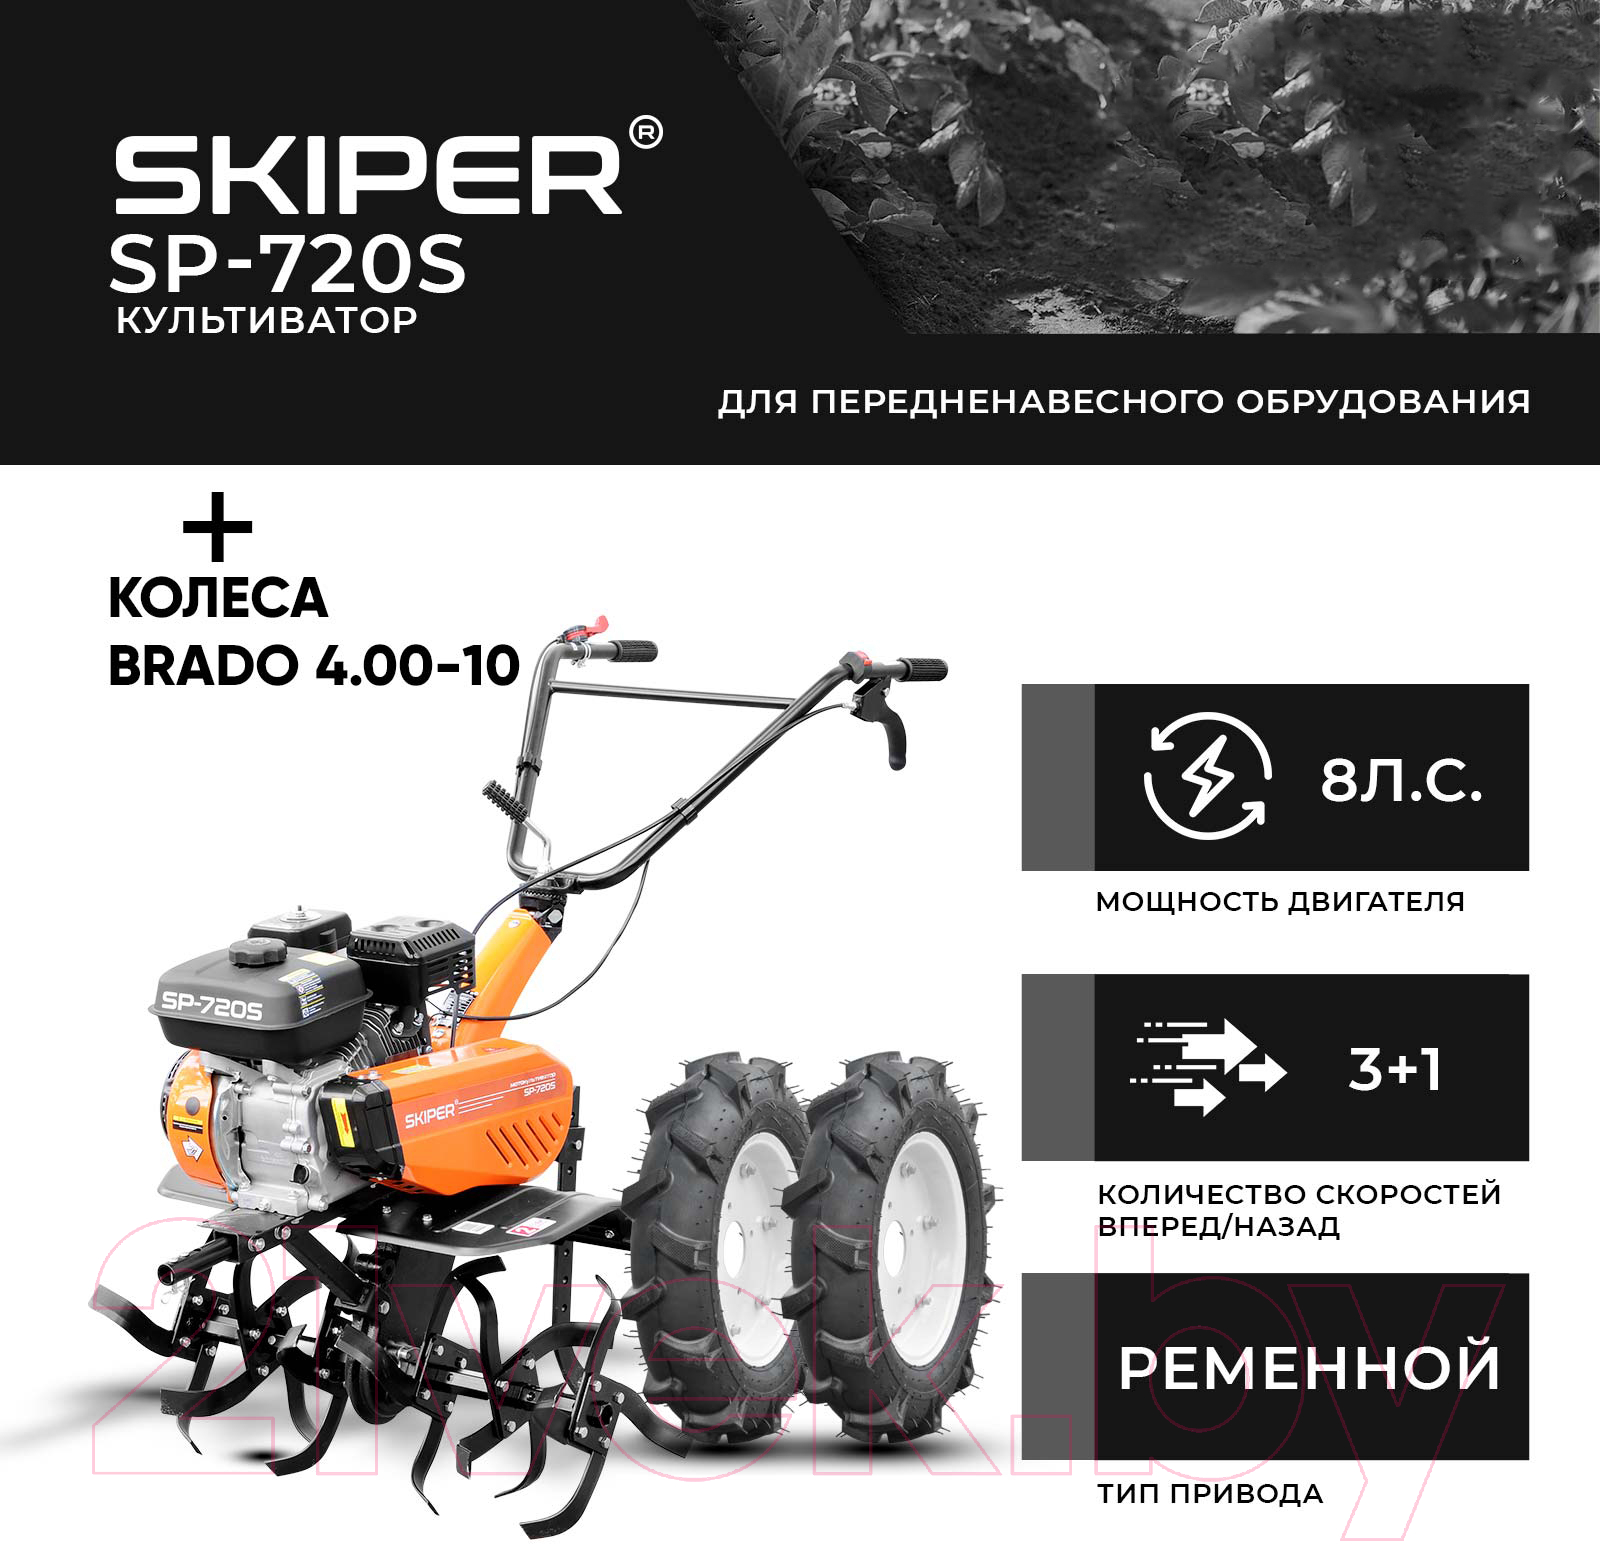 Мотокультиватор Skiper SP-720S + колеса Brado 4.00-10